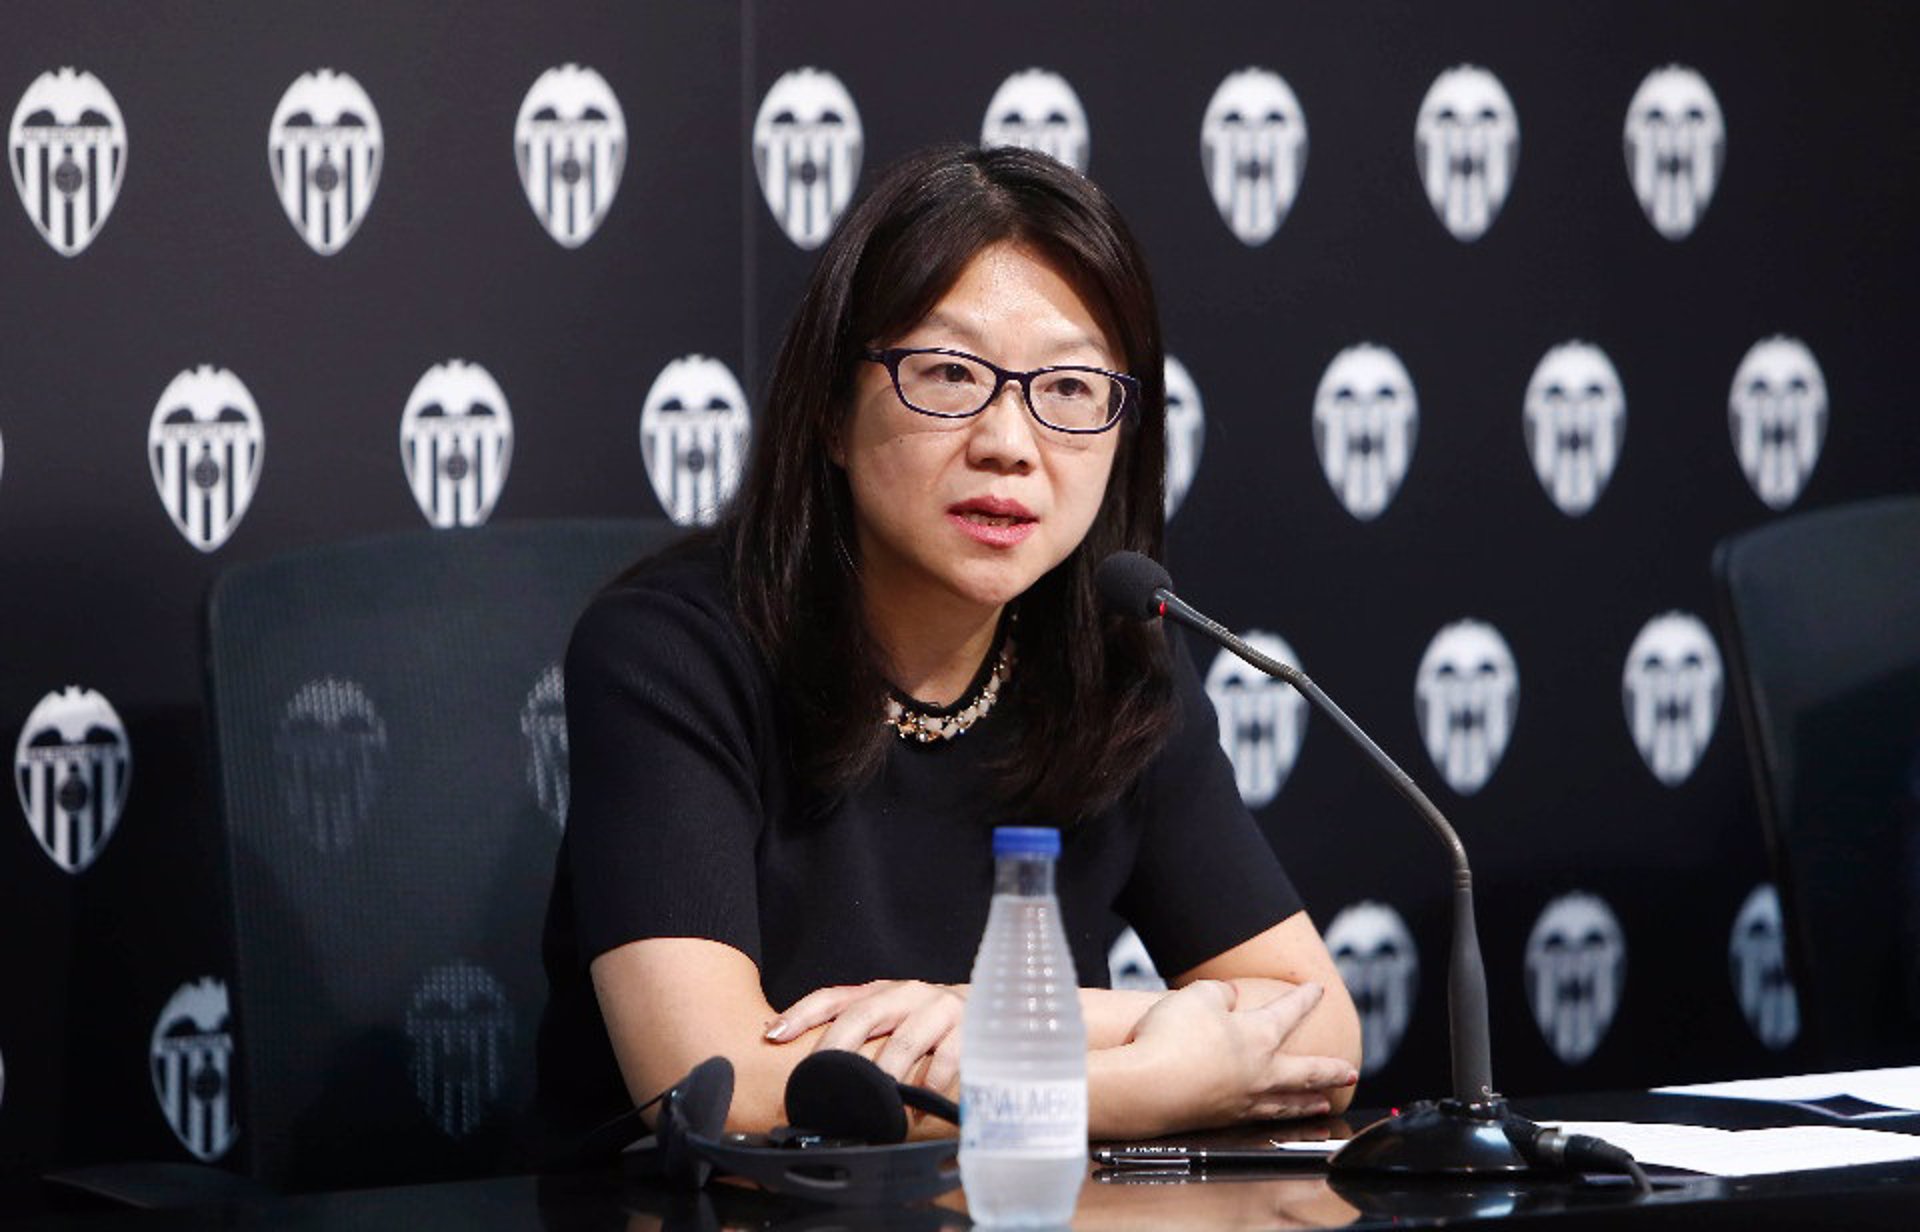 La presidenta del Valencia CF, Layhoon Chan, en una rueda de prensa